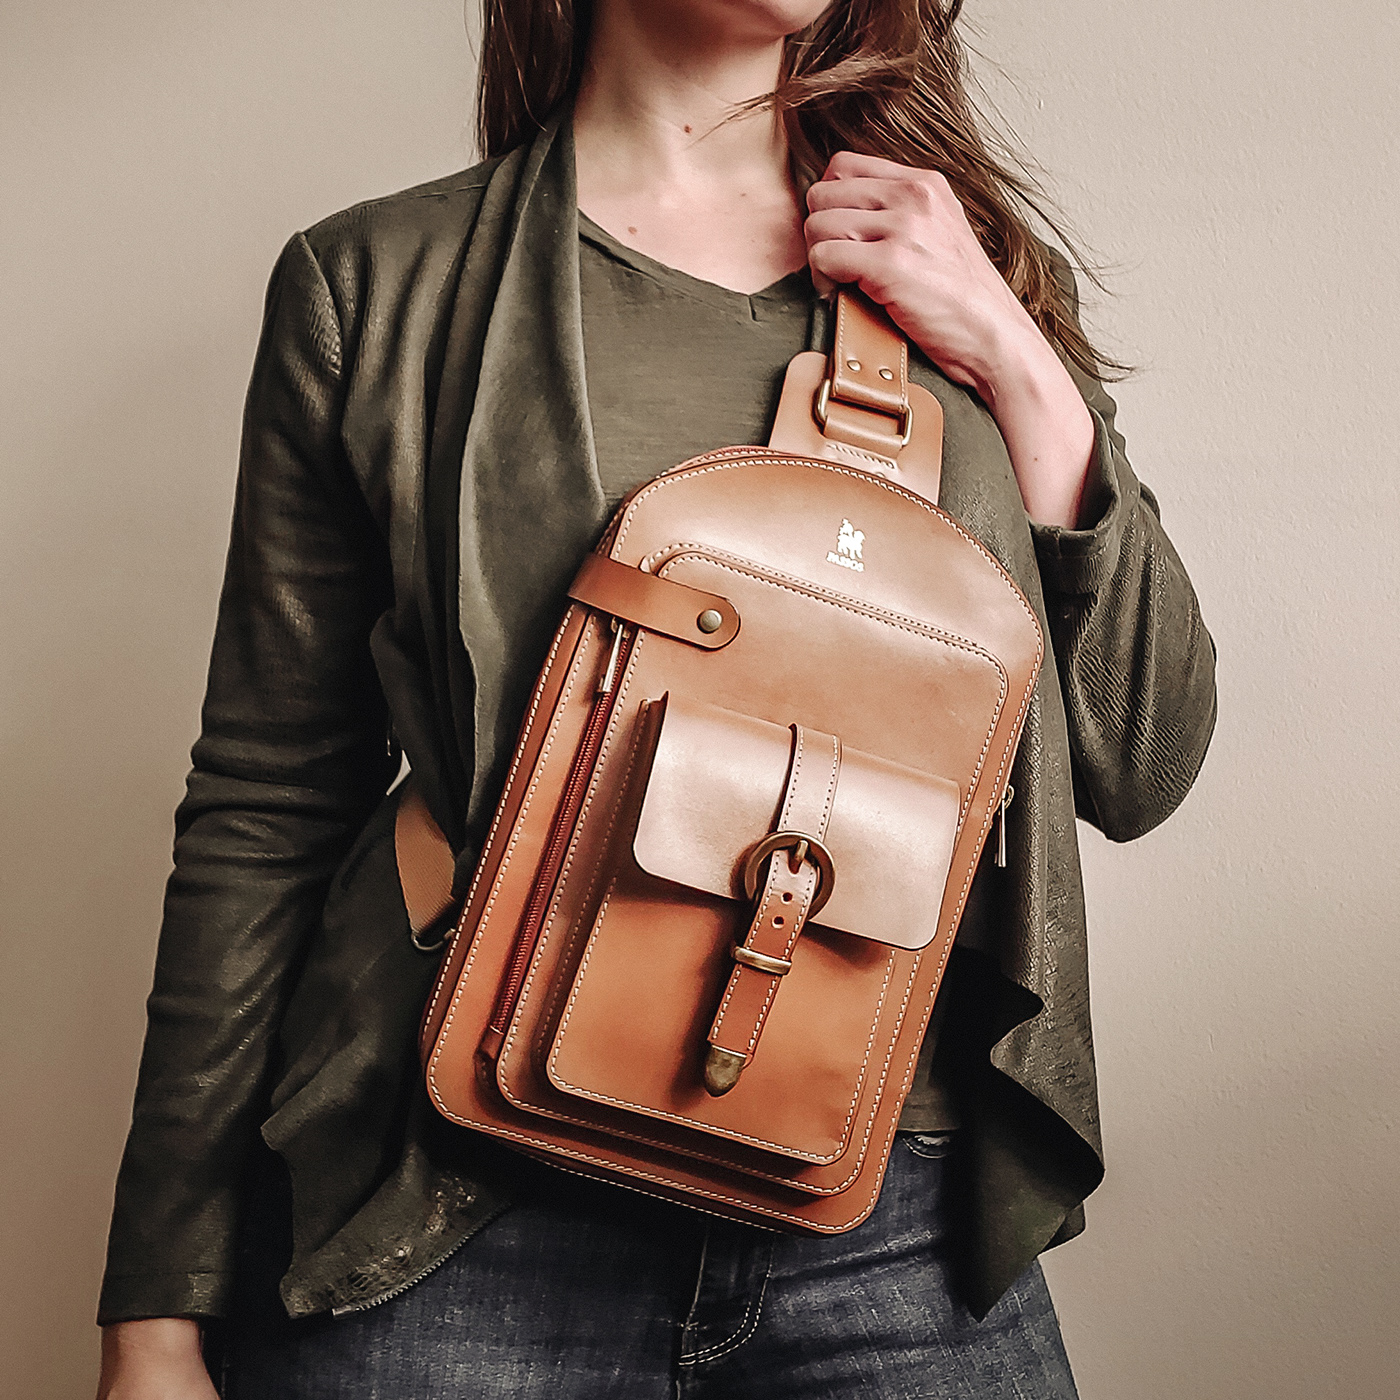 backpack leatherbackpack leatherbag leatherbags shoulderbag shoulderbags sling bag slingbag